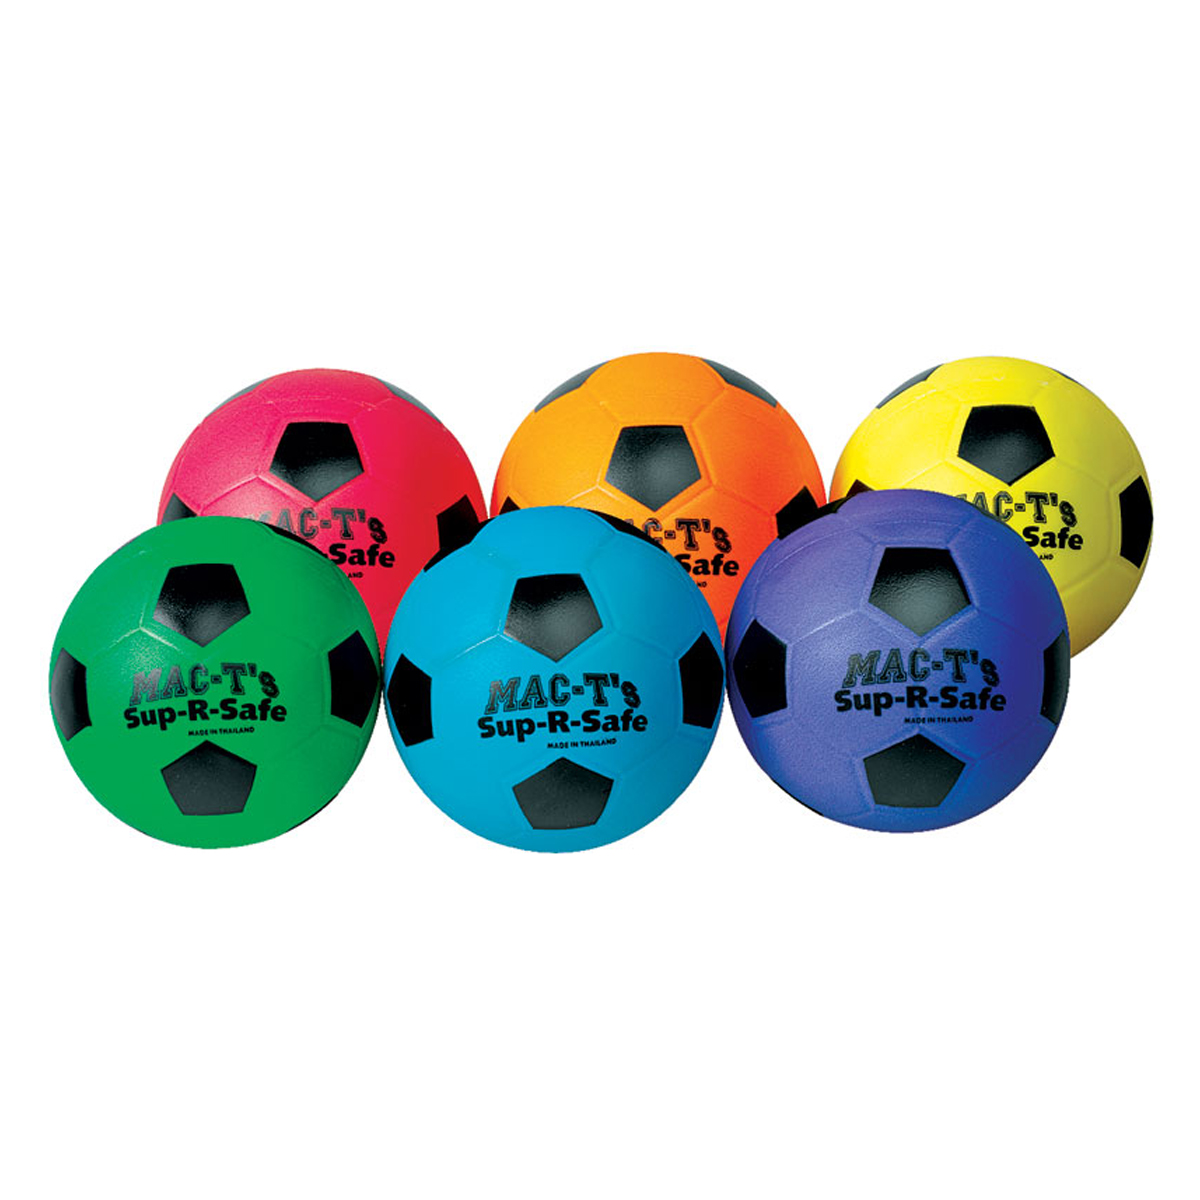 Sup-R-Safe 6" Soccer Ball 6-Color Set